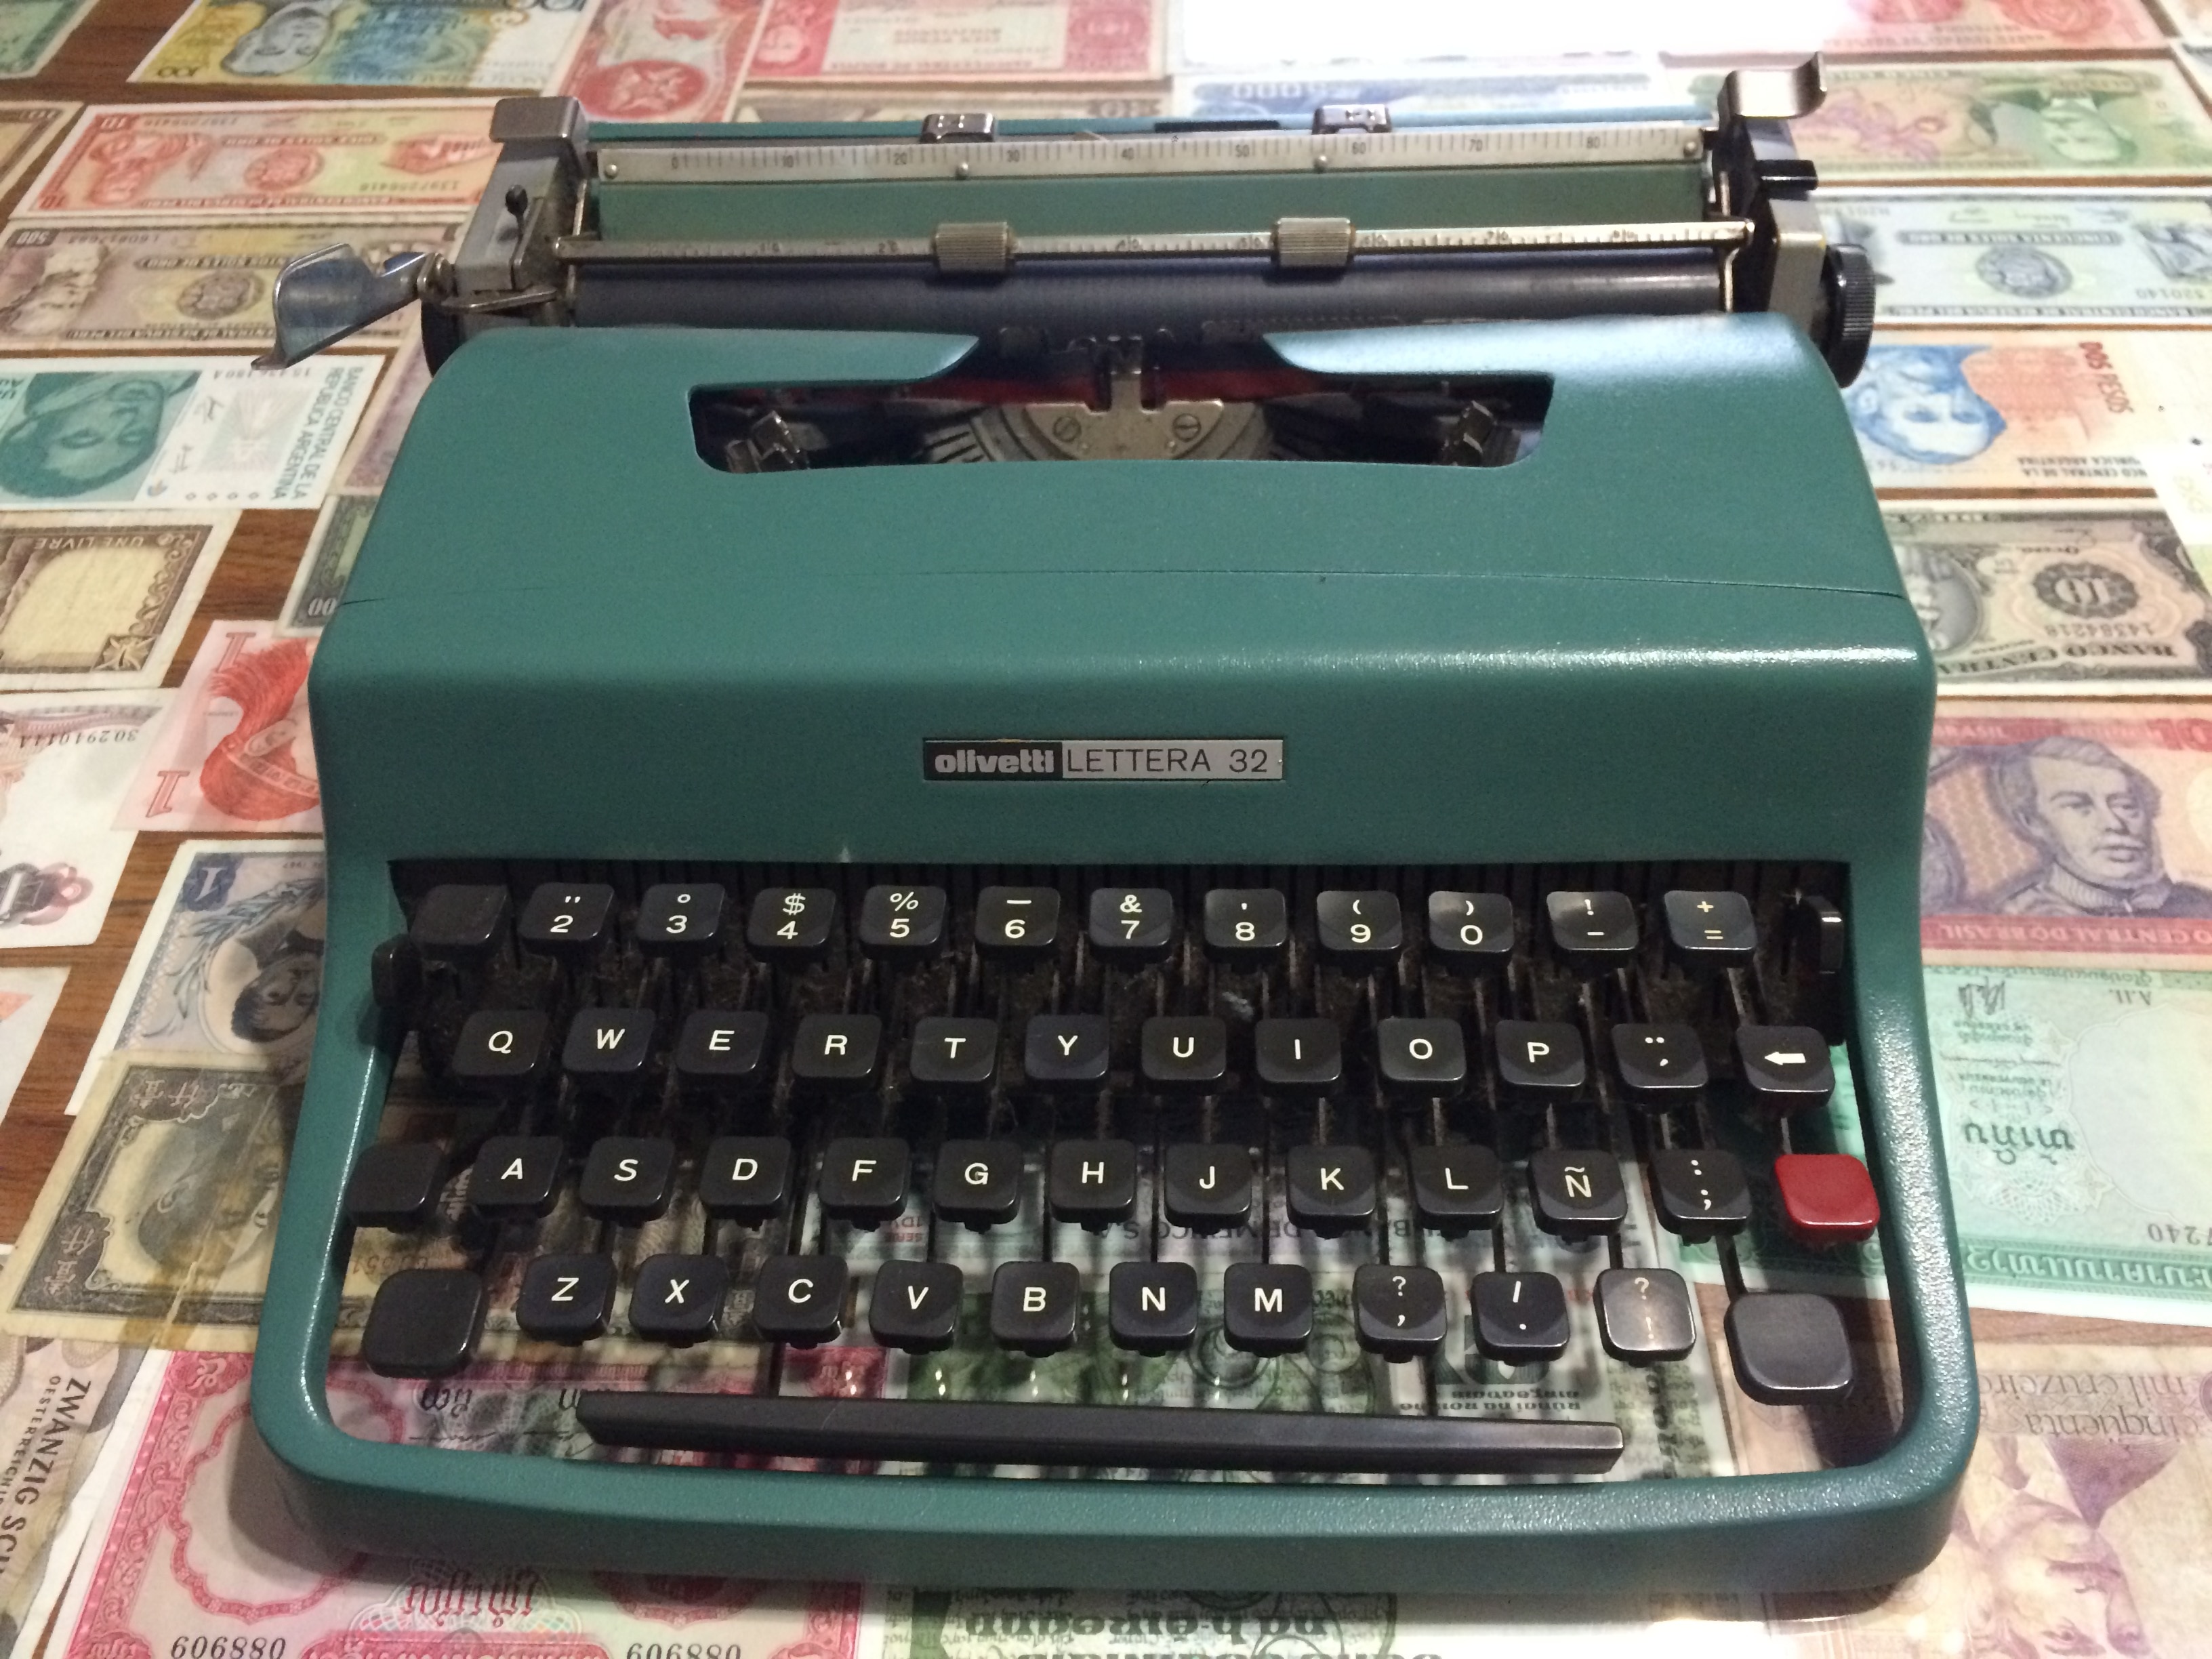 green typewriter